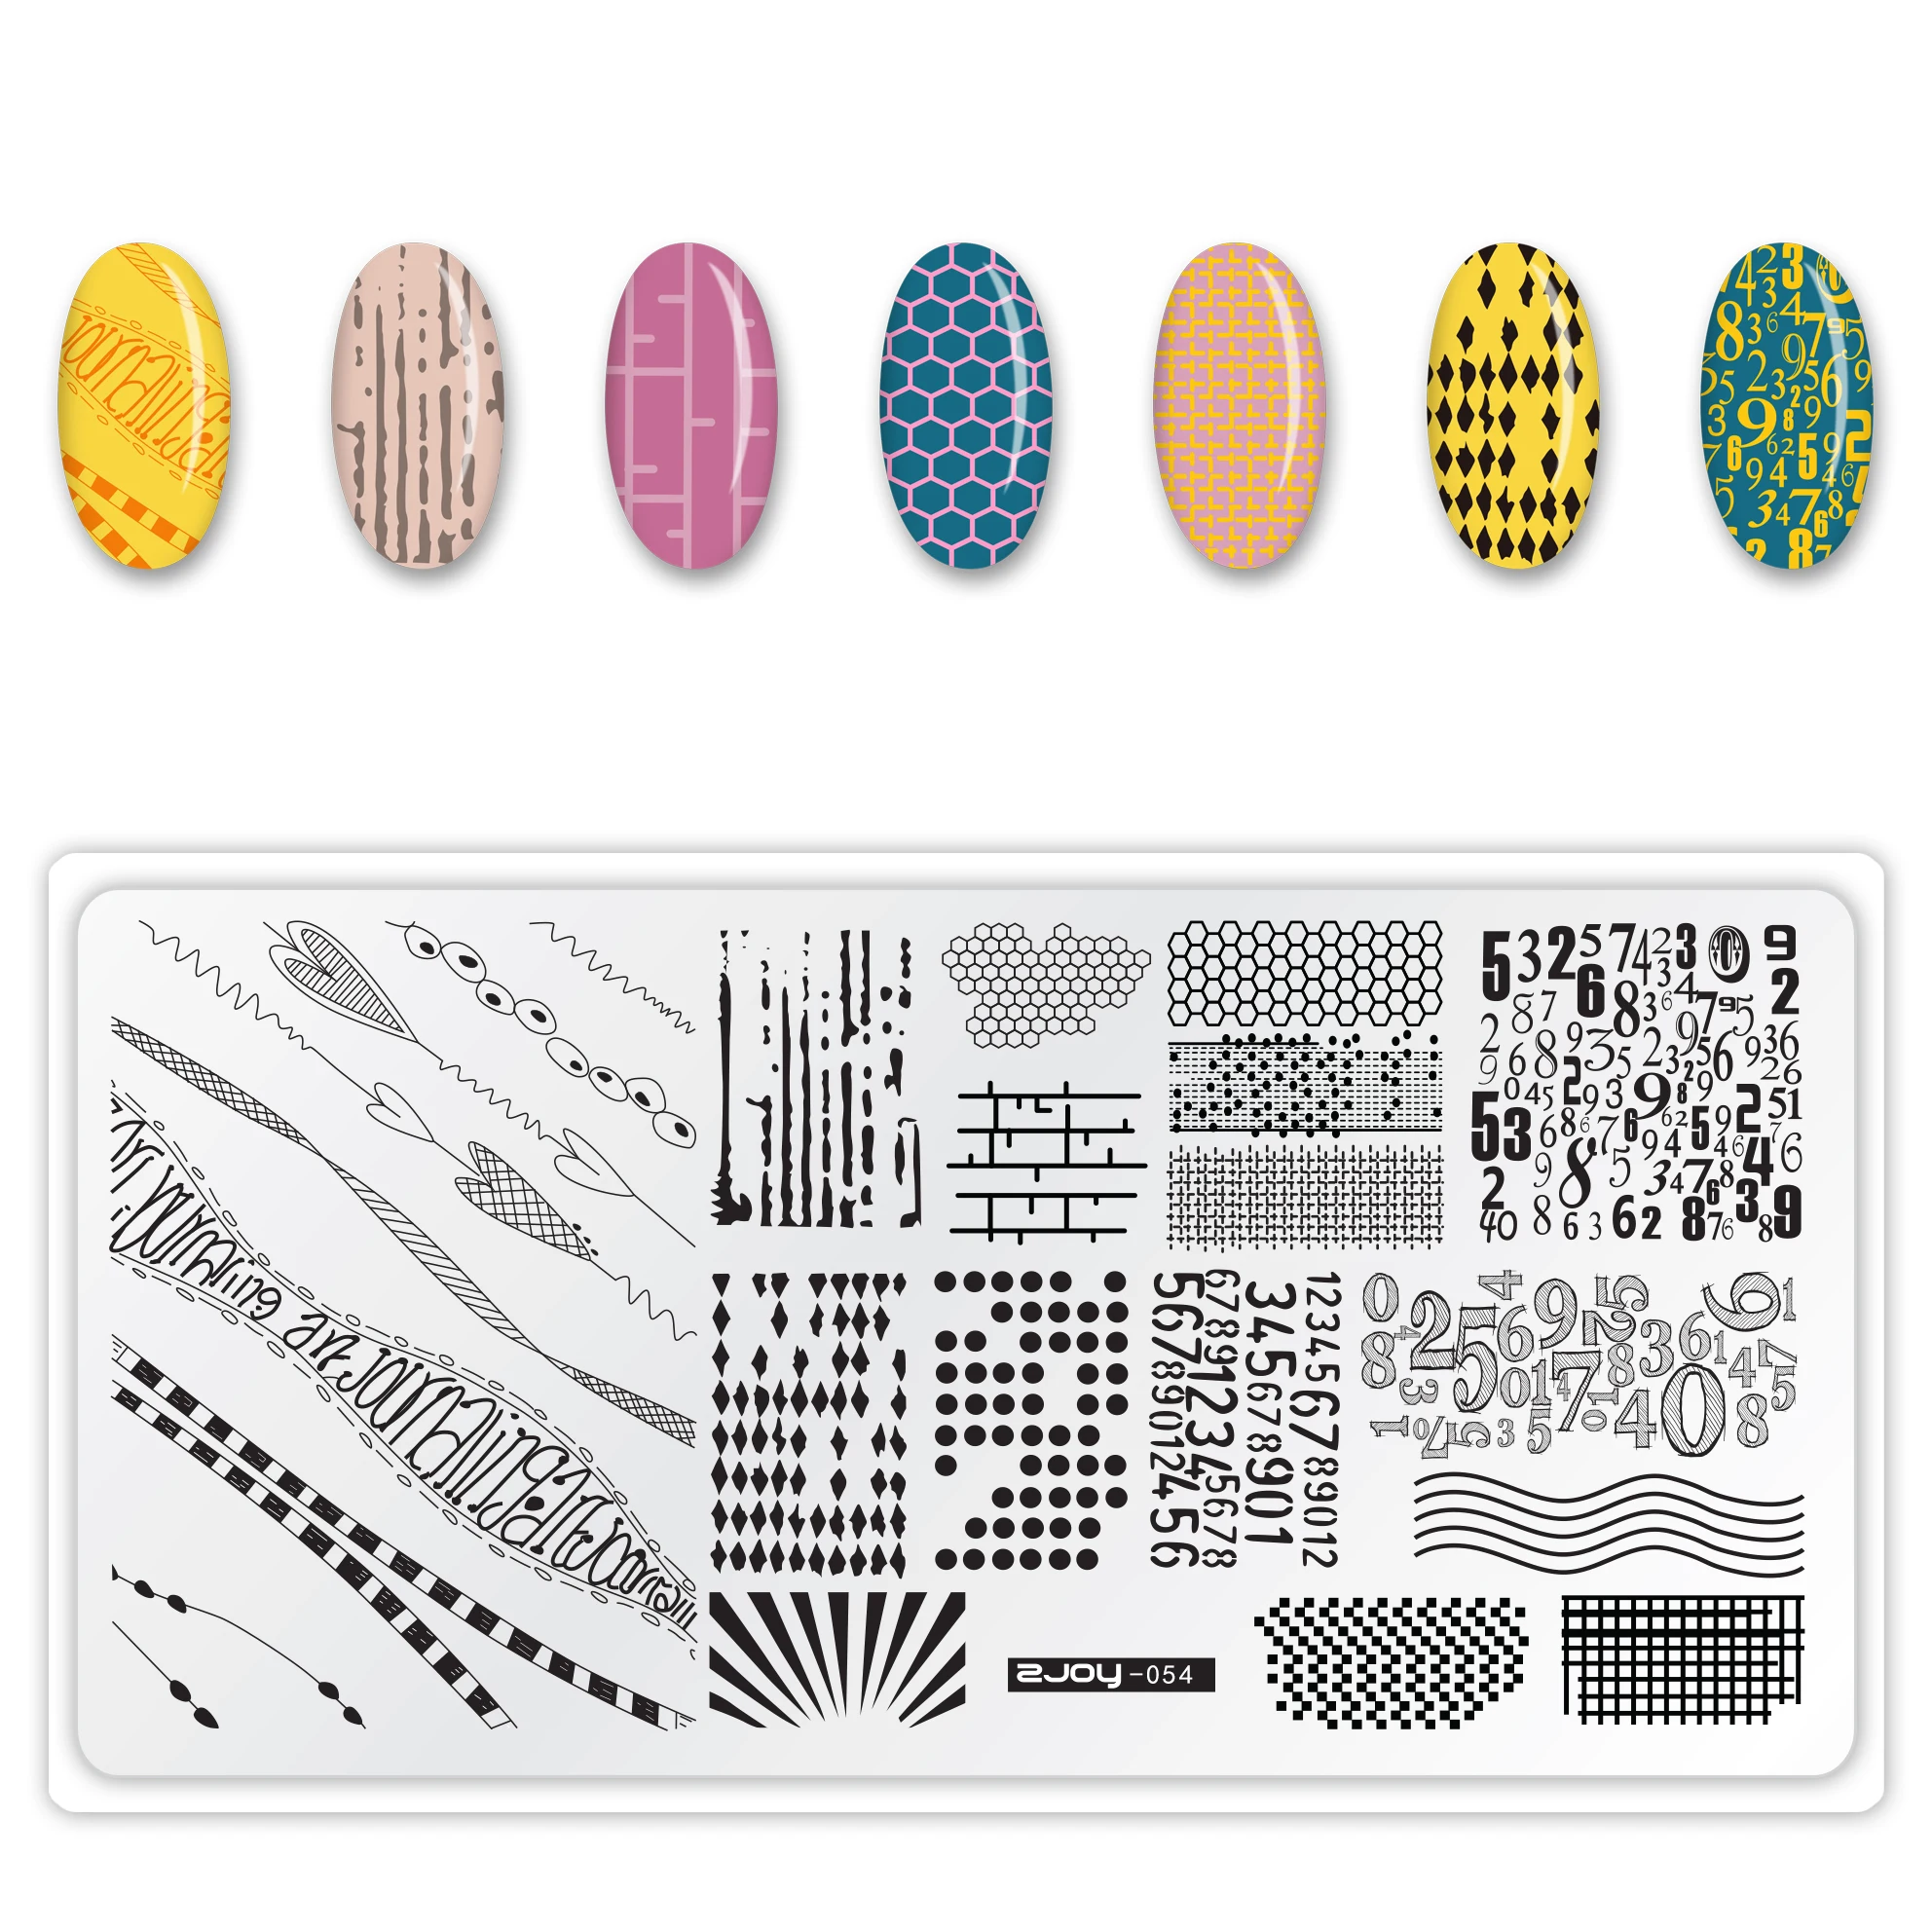 6,5*12,5 см пластины для штамповки ногтей лист Цветы бабочка собака дизайн ногтей штамп шаблоны трафареты дизайн лак Инструменты для маникюра